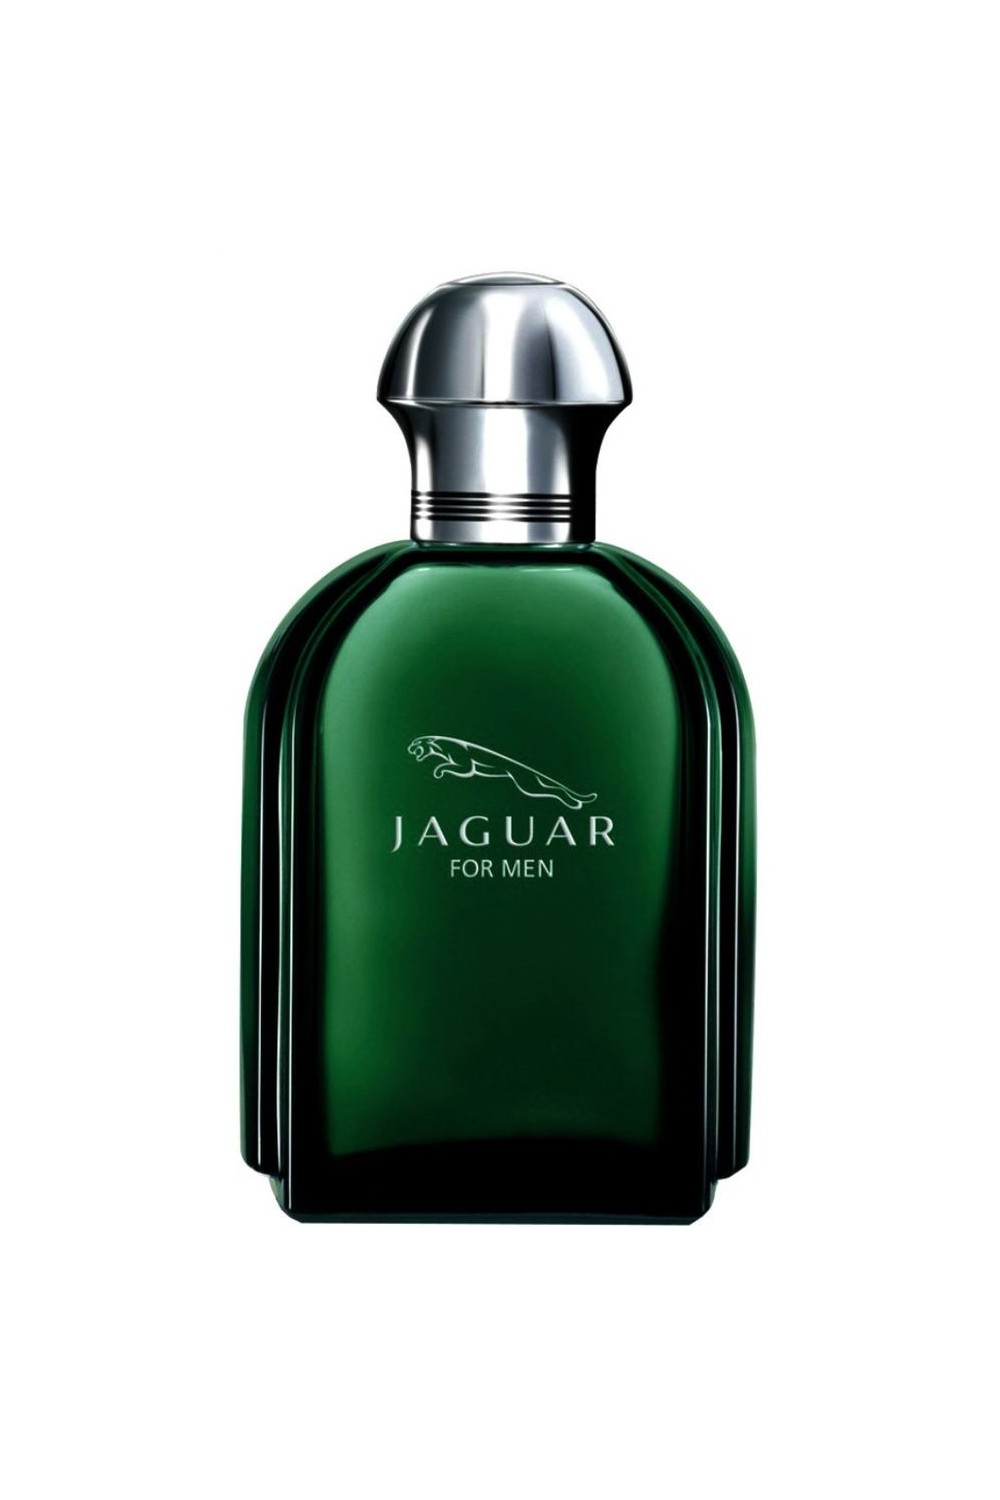 Jaguar For Men Eau De Toilette Spray 100ml